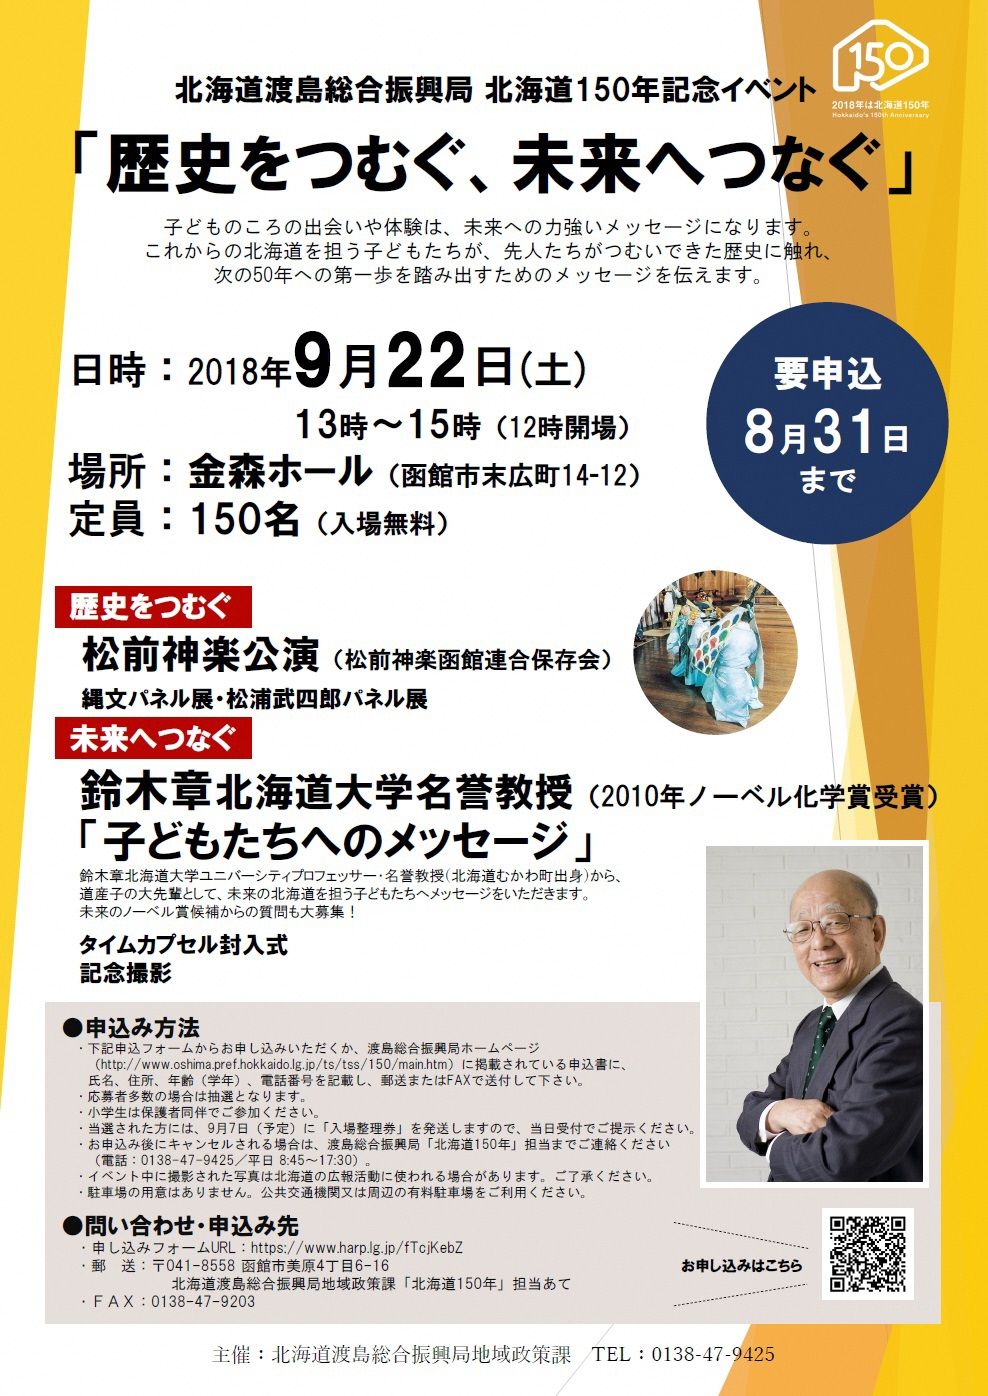 北海道150年記念イベント開催 9 22 土 は金森ホールへ 北海道庁のブログ 超 旬ほっかいどう 楽天ブログ